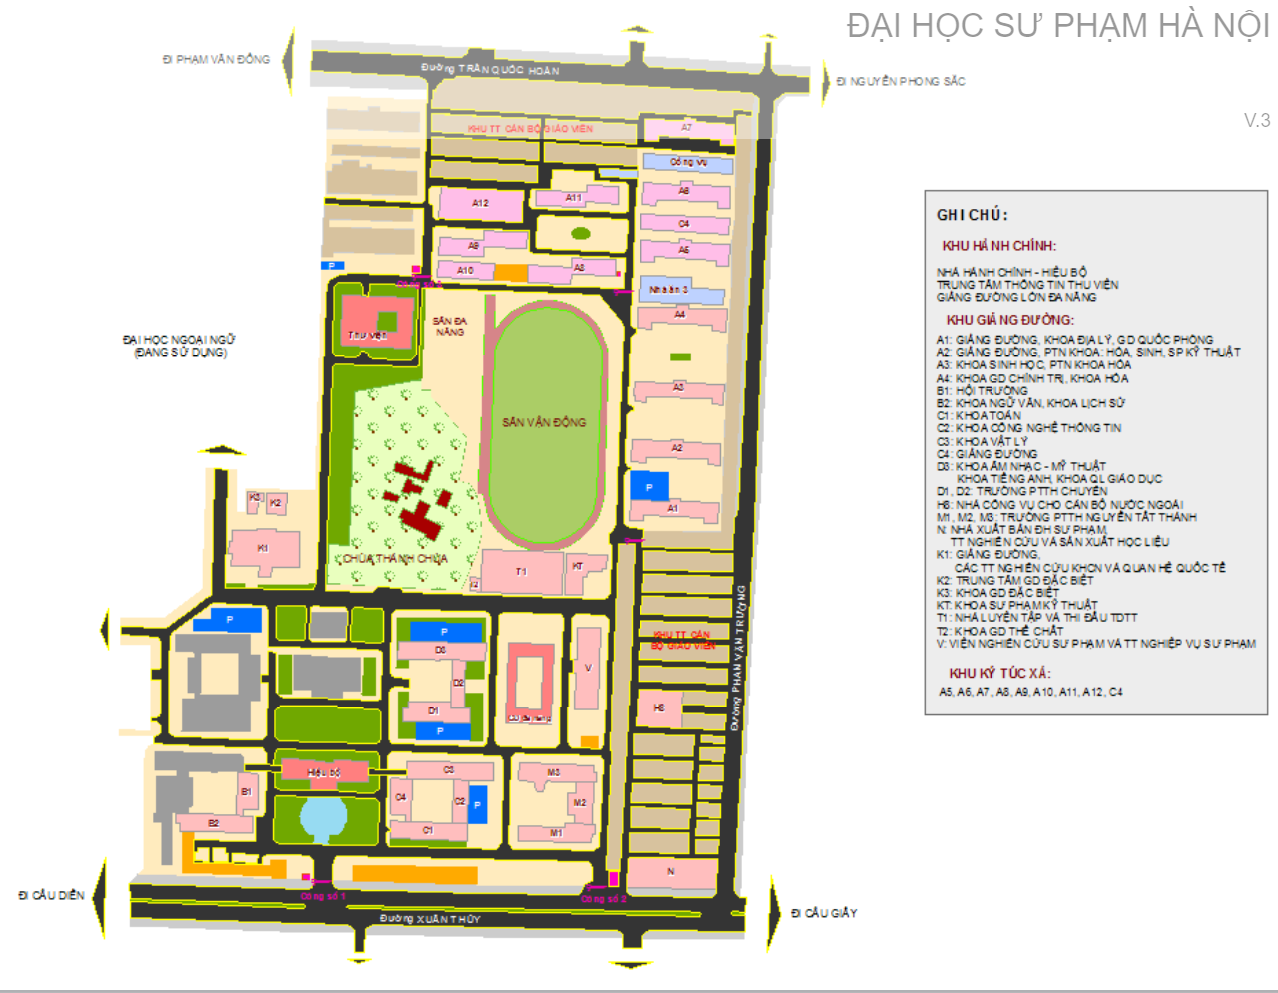 Bản đồ trường Đại học Sư phạm TPHCM: Bản đồ trường Đại học Sư phạm TPHCM đã được nâng cấp và cập nhật với nhiều tiện ích mới, giúp cho sinh viên dễ dàng tìm kiếm các khu vực, phòng học, thư viện và các hoạt động ngoại khóa. Đặc biệt, bản đồ này được thiết kế dựa theo phản hồi của sinh viên, đảm bảo sự chính xác và tiện ích cho tất cả.